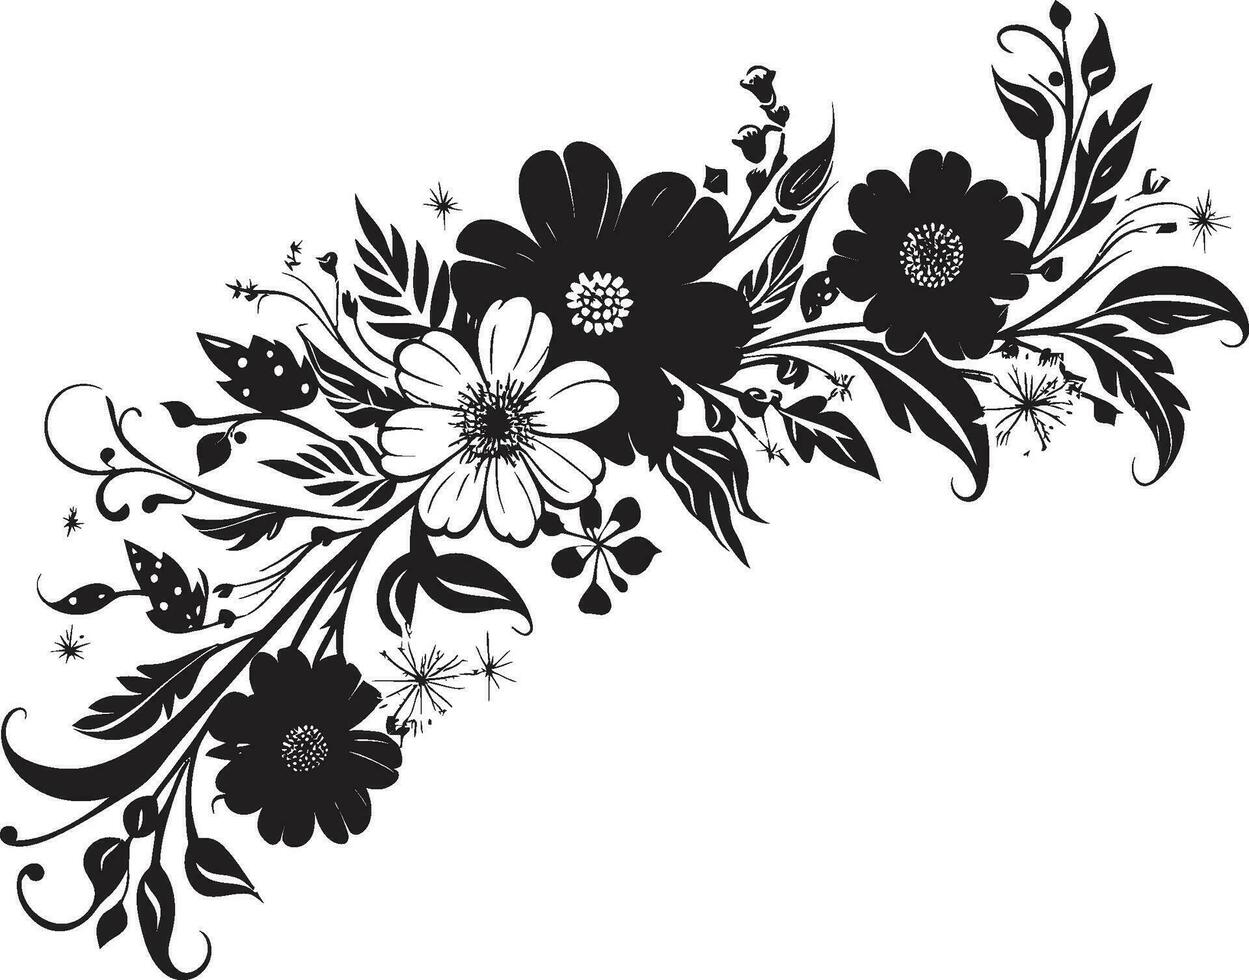 Artistic Noir Flourishes Black Logo Decorative Elements Chic Floral Details Invitation Card Vector Ornaments